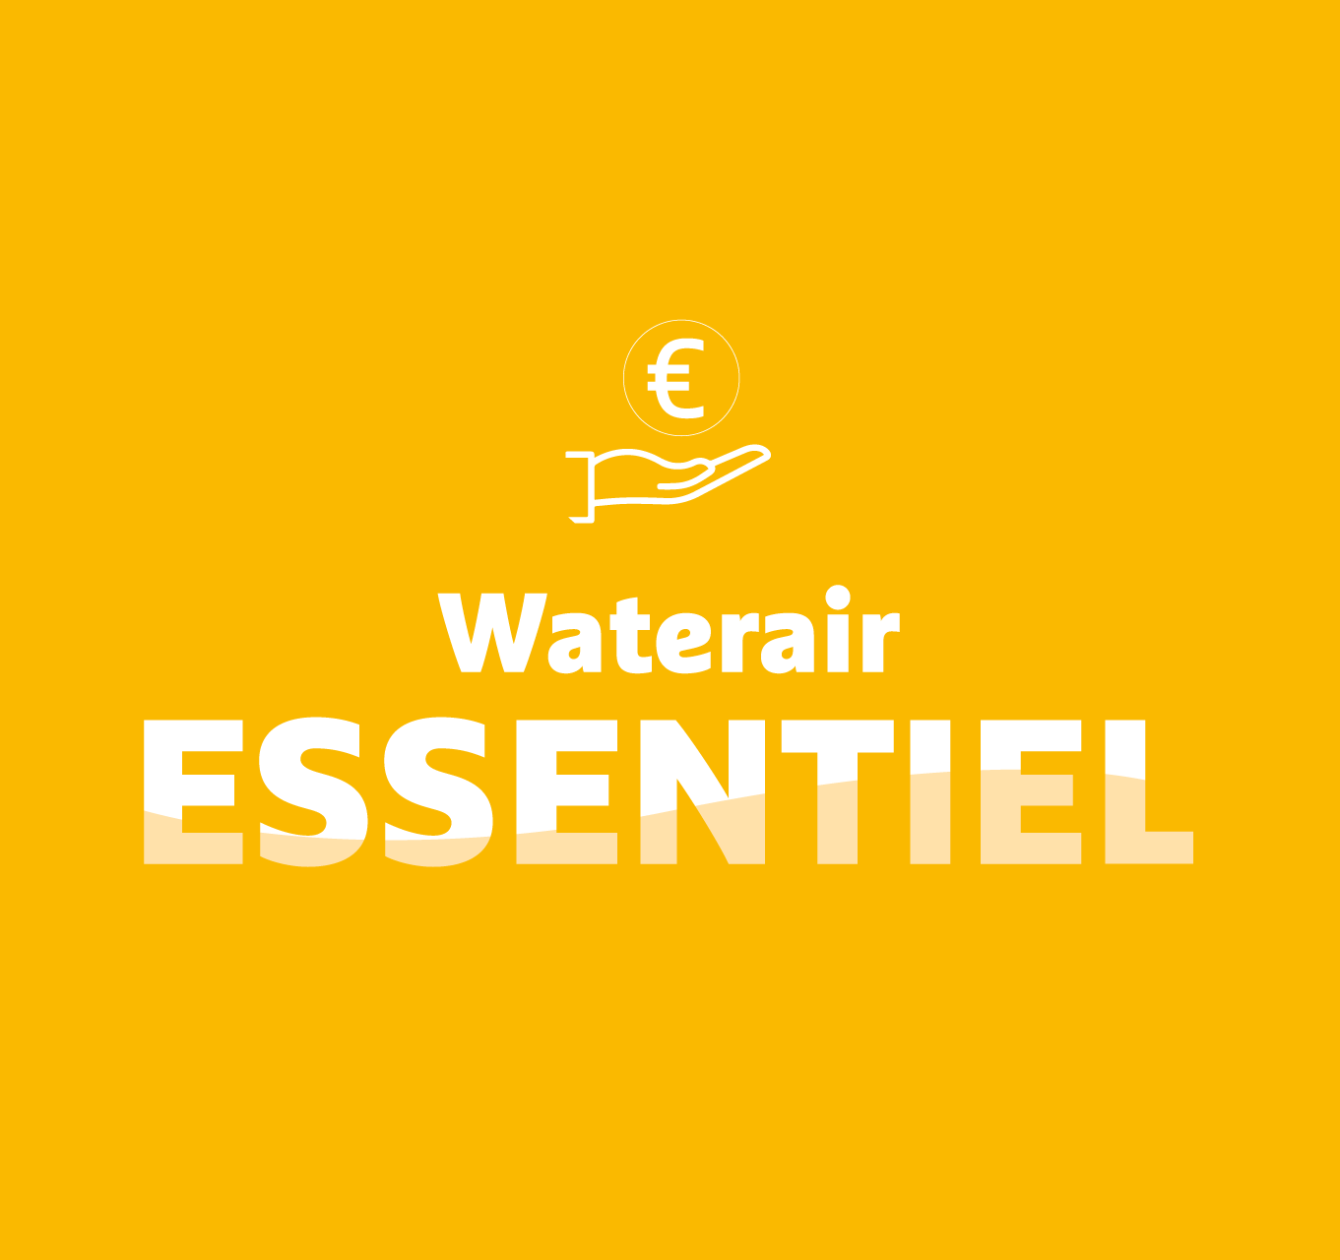 Waterair Essentiel: vaš održivi bazen po najpovoljnijoj cijeni